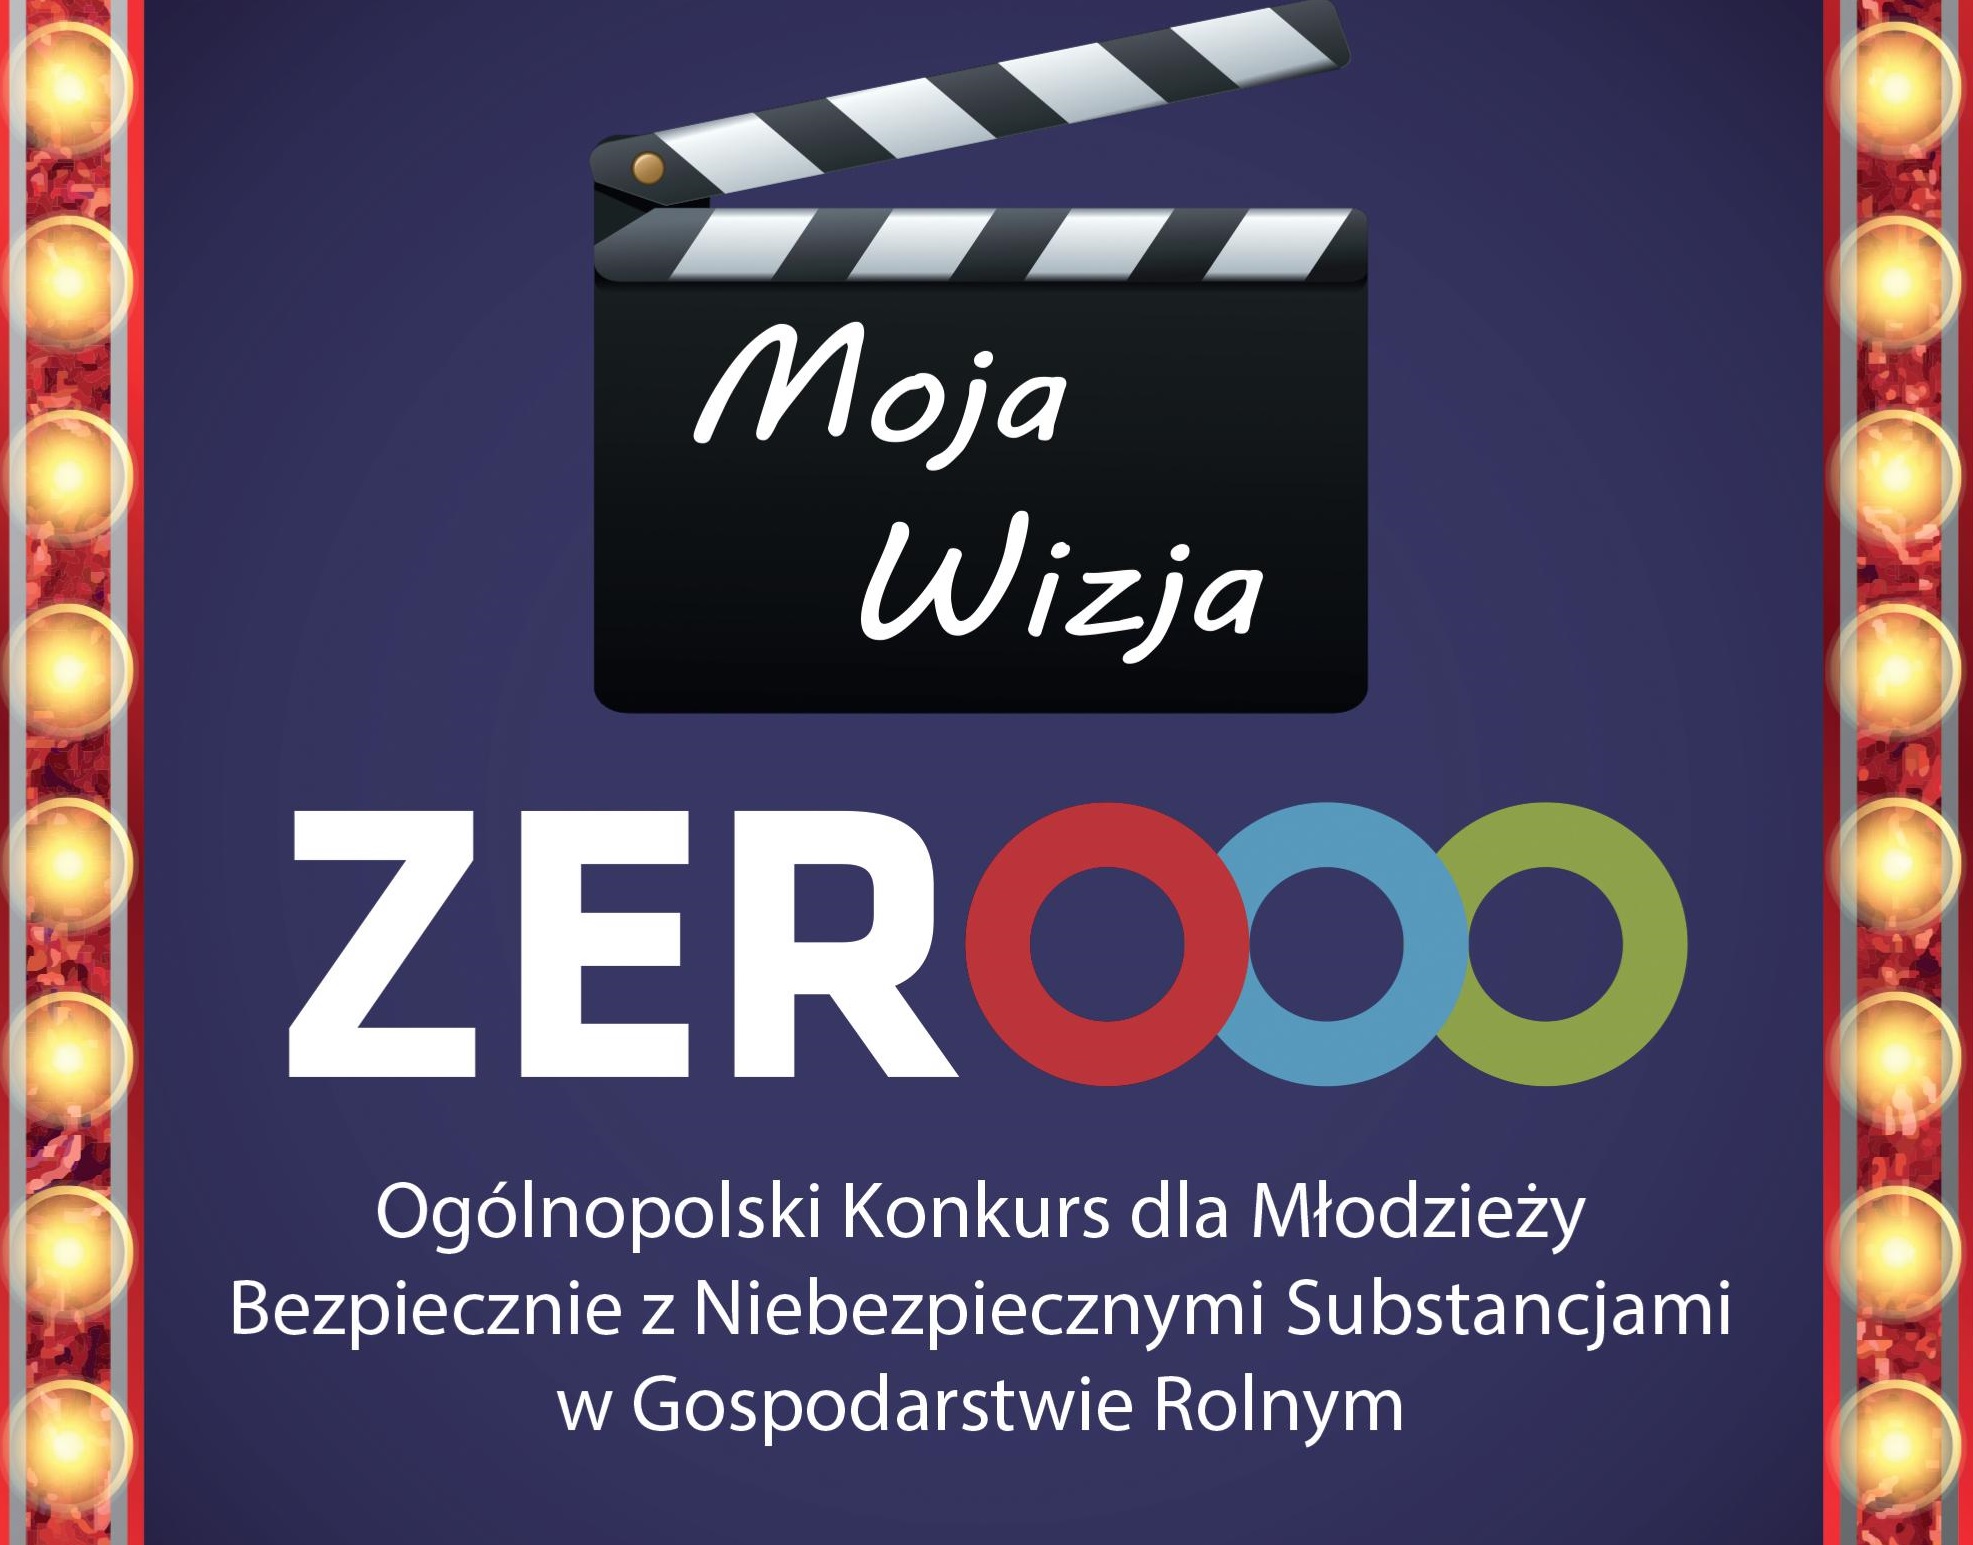 V edycja Ogólnopolskiego Konkursu dla Młodzieży „Moja Wizja Zero – Bezpiecznie z Niebezpiecznymi Substancjami w Gospodarstwie Rolnym”.